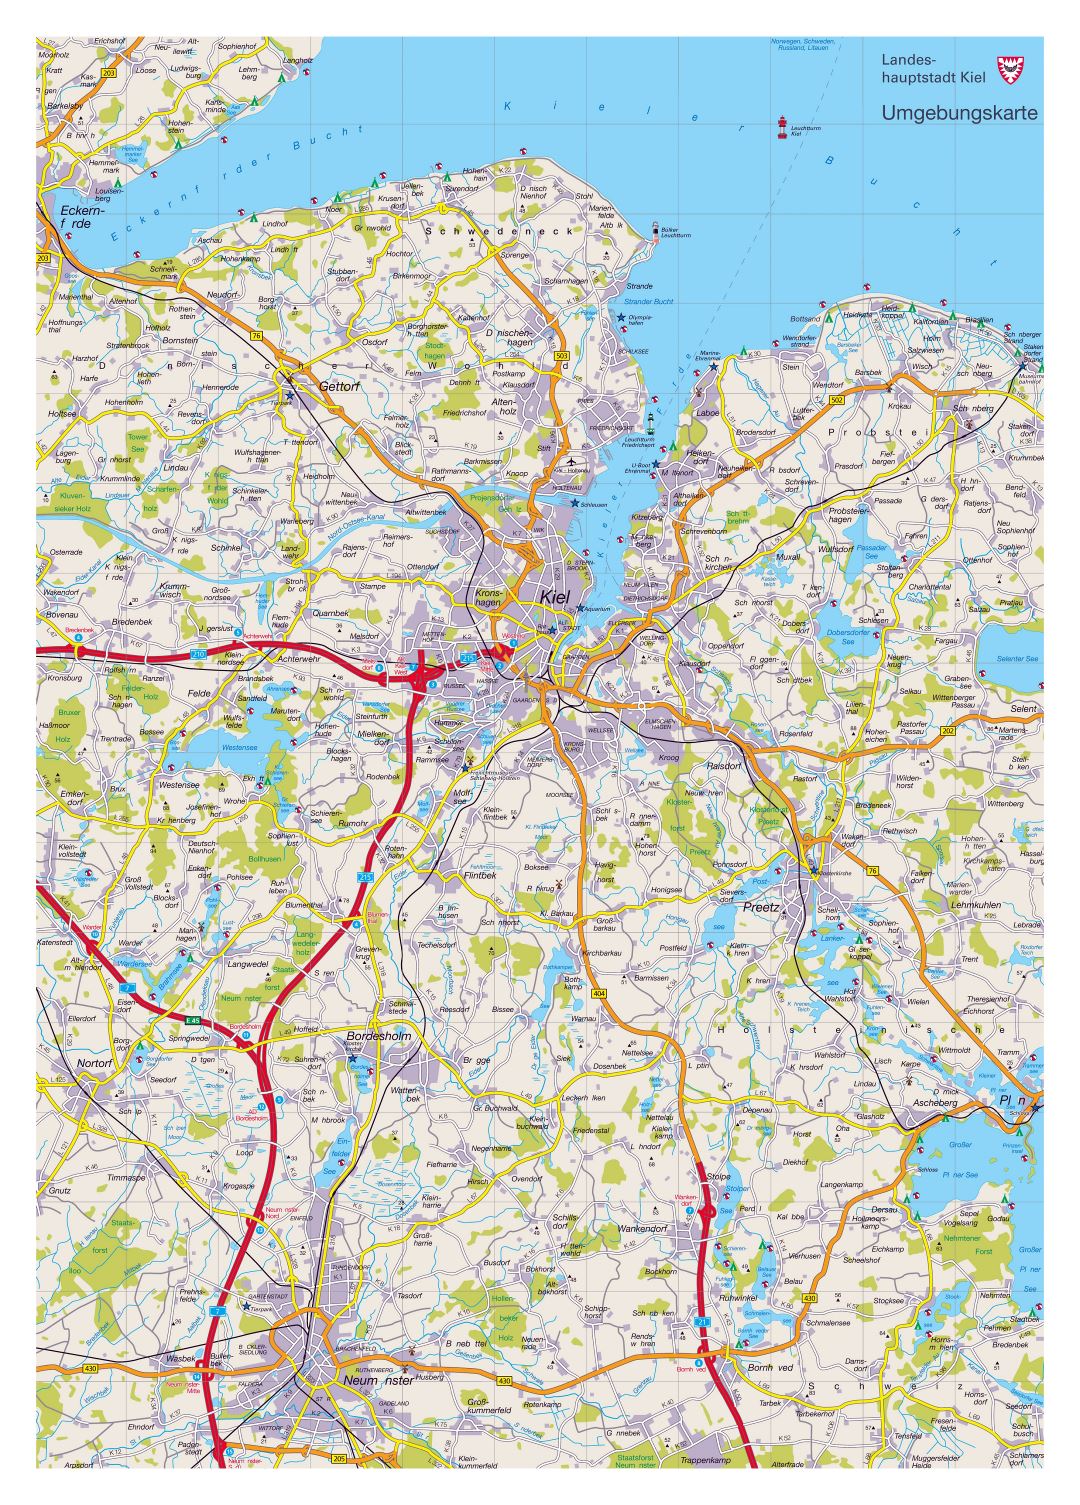 Gran mapa detallado de los alrededores de la ciudad de Kiel